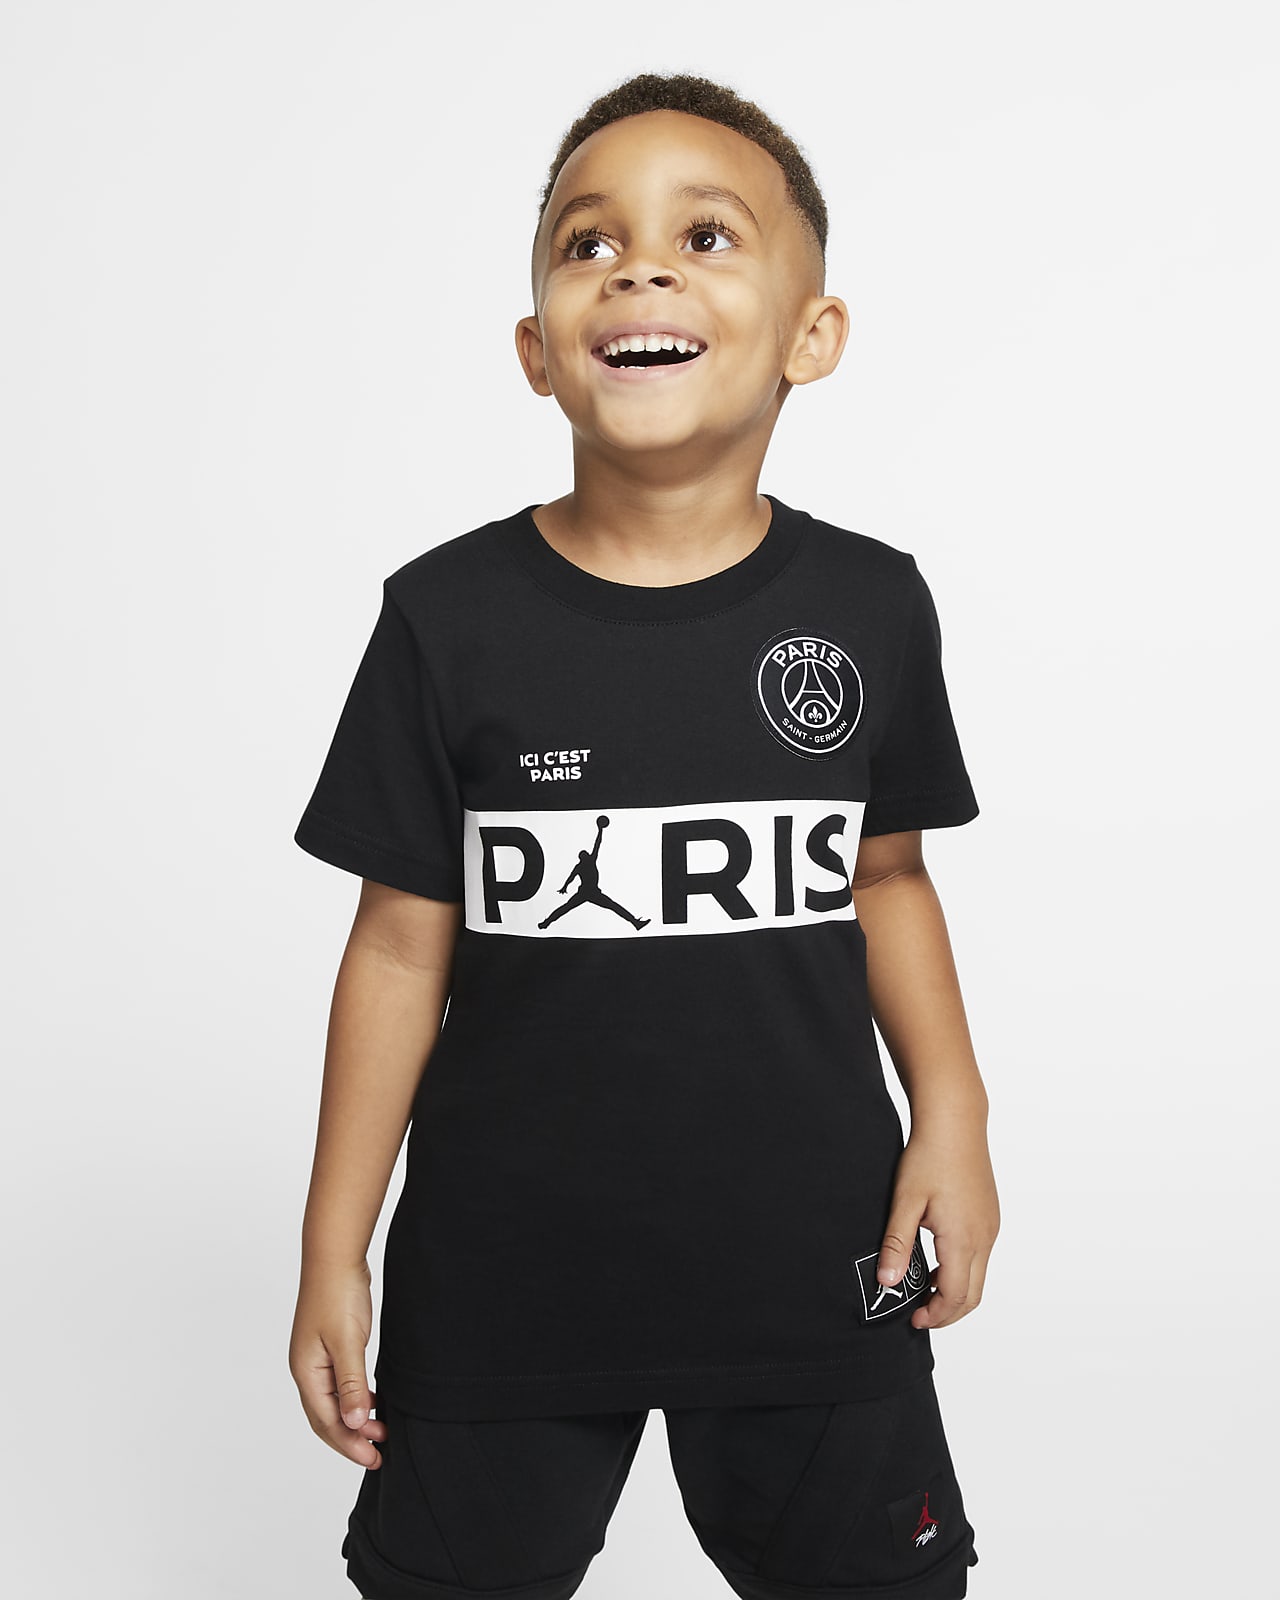 Κοντομάνικο T-Shirt PSG για μικρά παιδιά